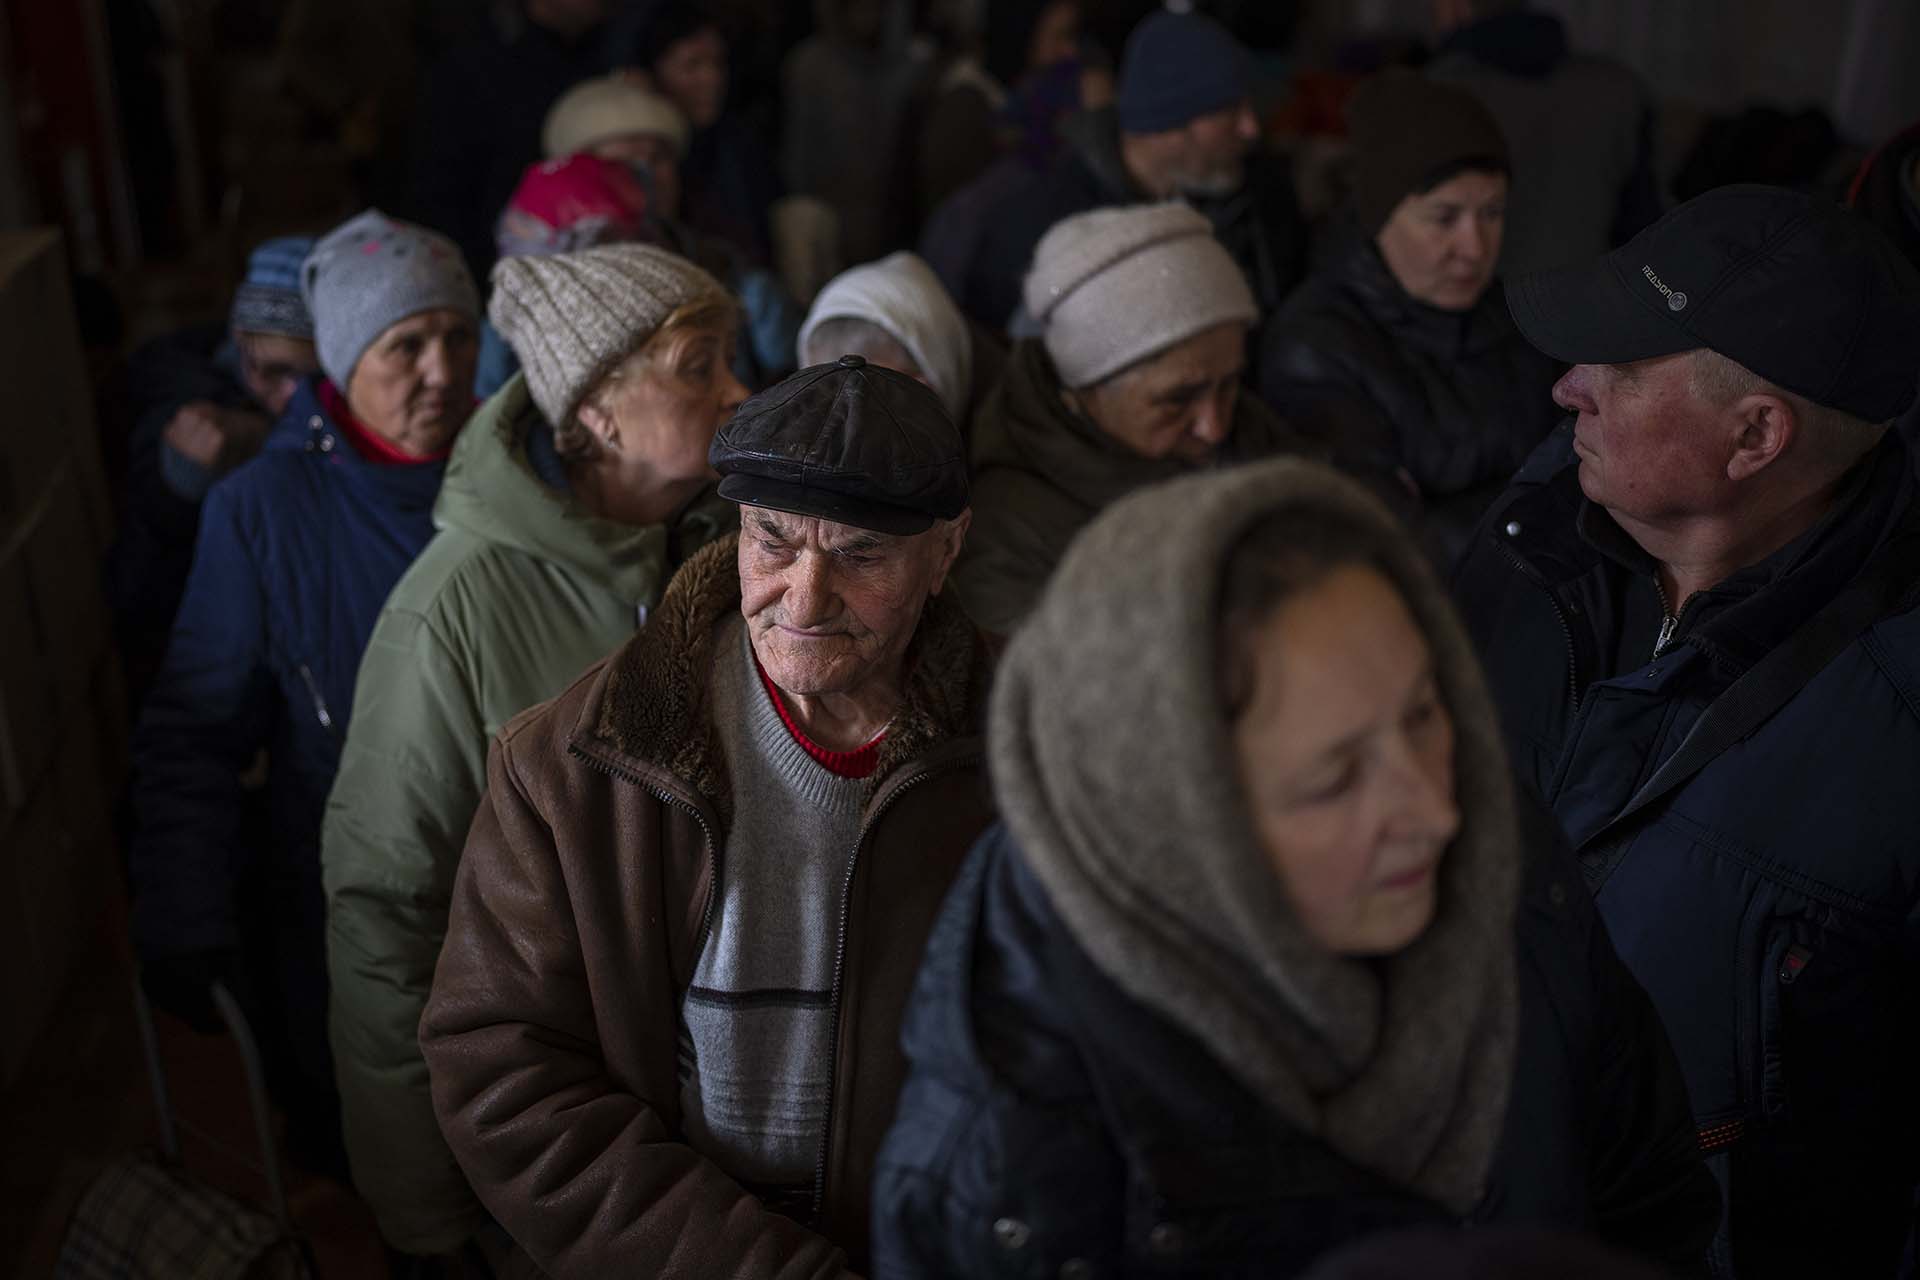 Hombres ucranianos hacen cola dentro de una iglesia para recibir ayuda humanitaria donada por la Unión Europea en Bucha, en las afueras de Kiev, el martes 19 de abril de 2022. Los ciudadanos de Bucha siguen sin electricidad, agua y gas después de más de 44 días desde que los rusos comenzó la invasión (AP Photo/Emilio Morenatti)